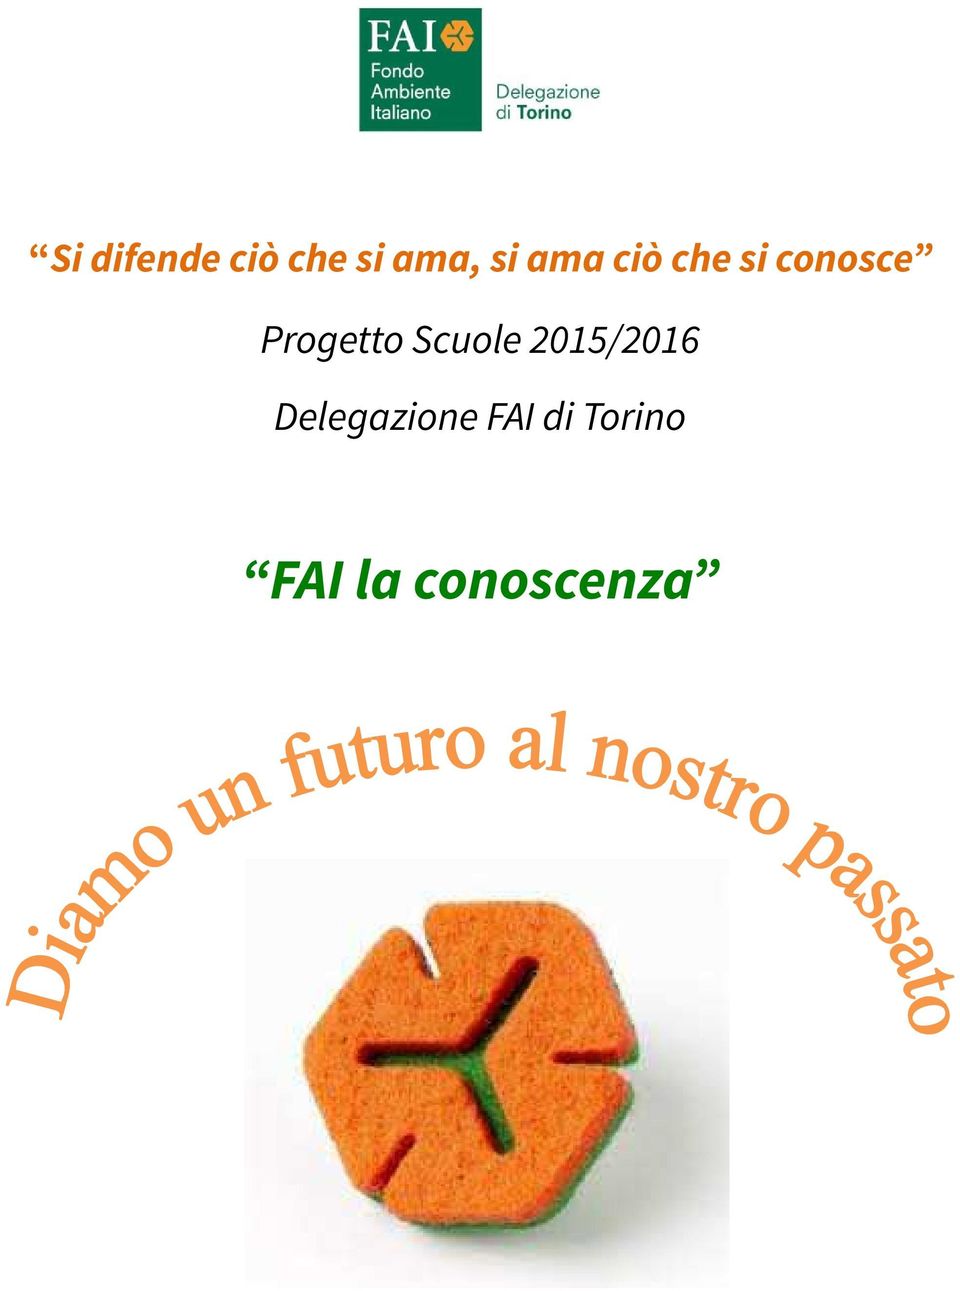 Progetto Scuole 2015/2016